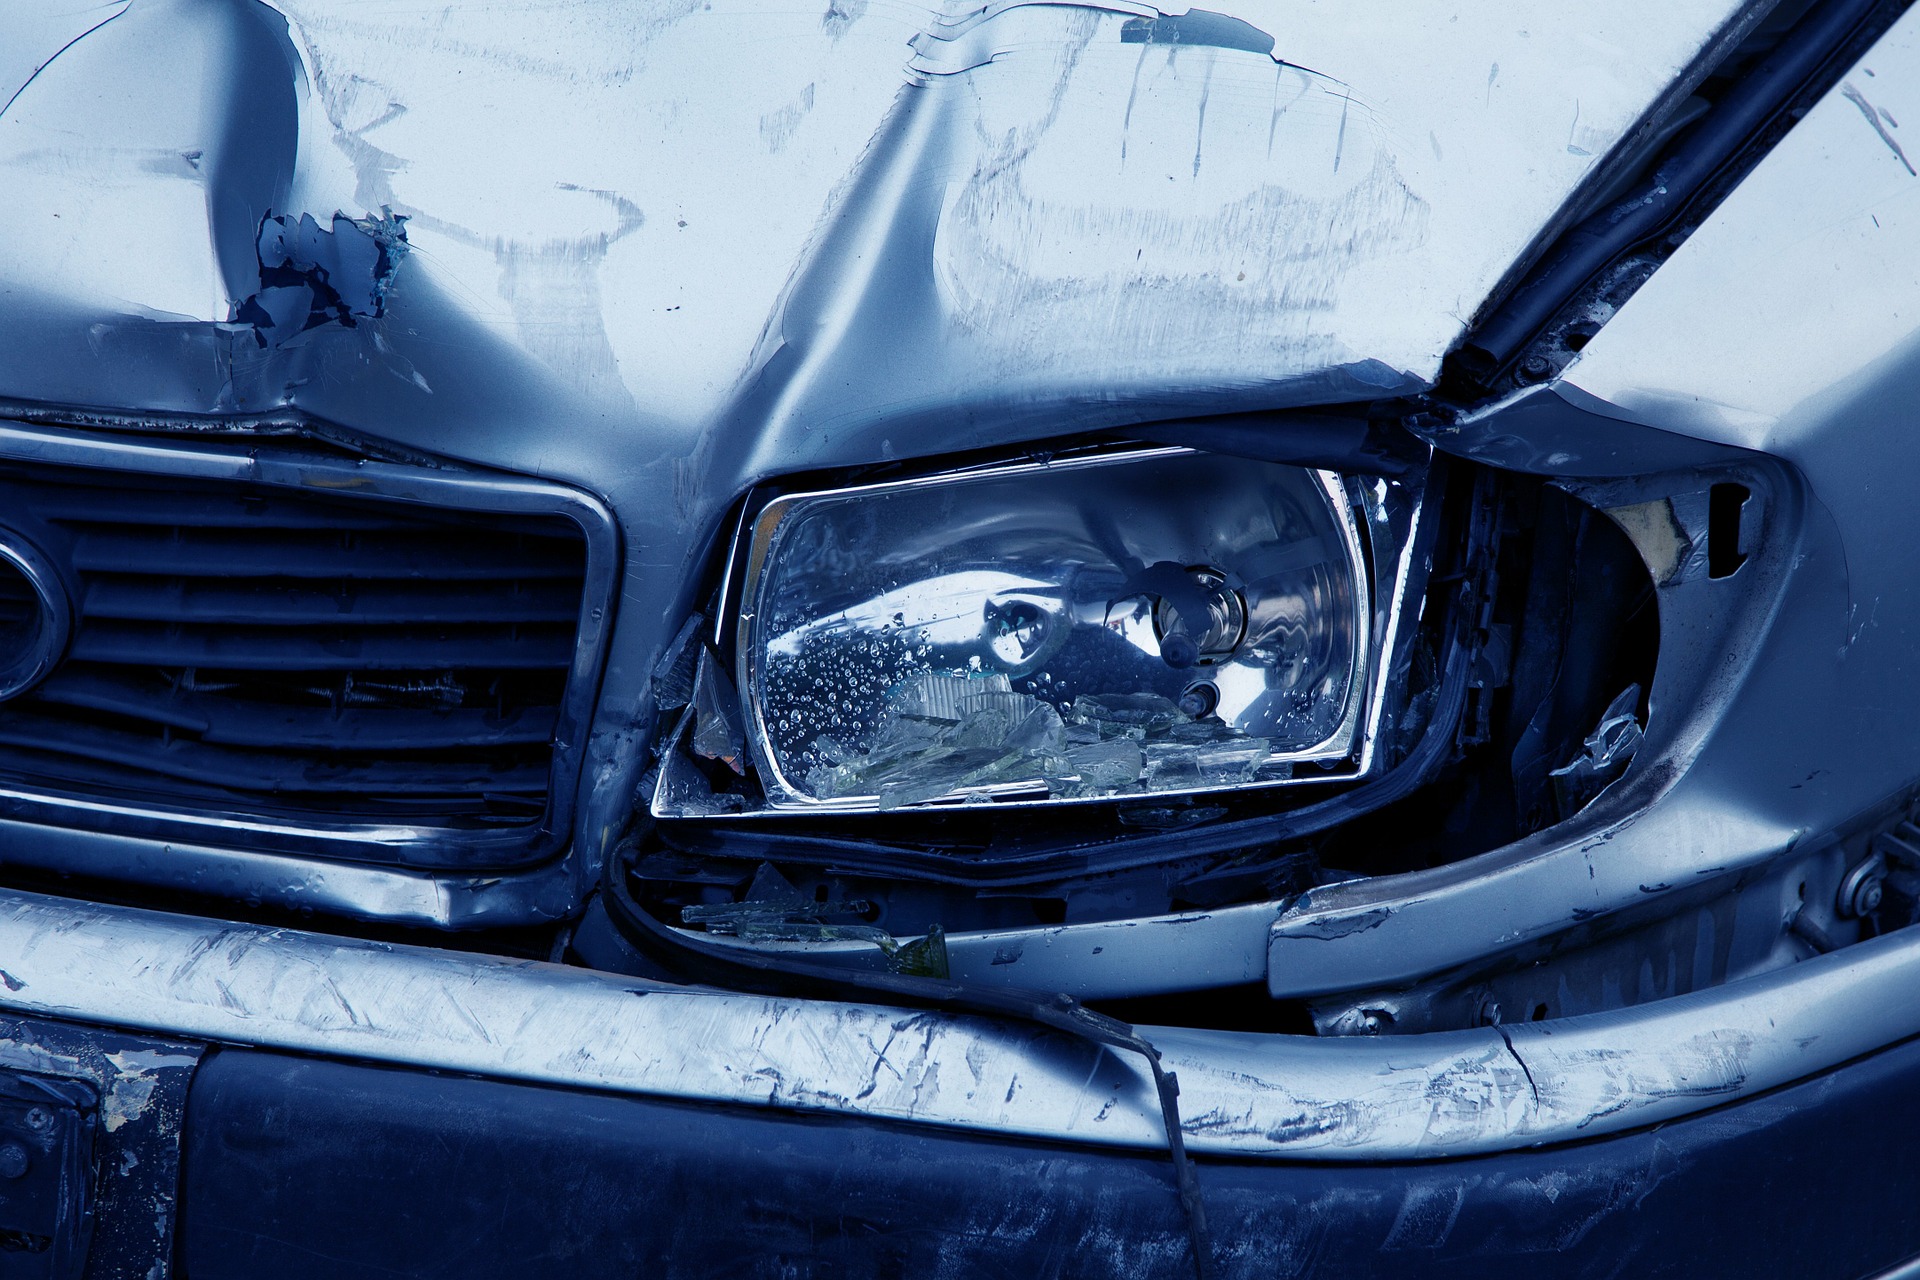 ¿Los requisitos de educación del conductor de Lax contribuyen a la alta tasa de accidentes automovilísticos de Carolina del Sur? | Abogados de Lesiones en Carolina del Sur | Bufete de abogados Steinberg